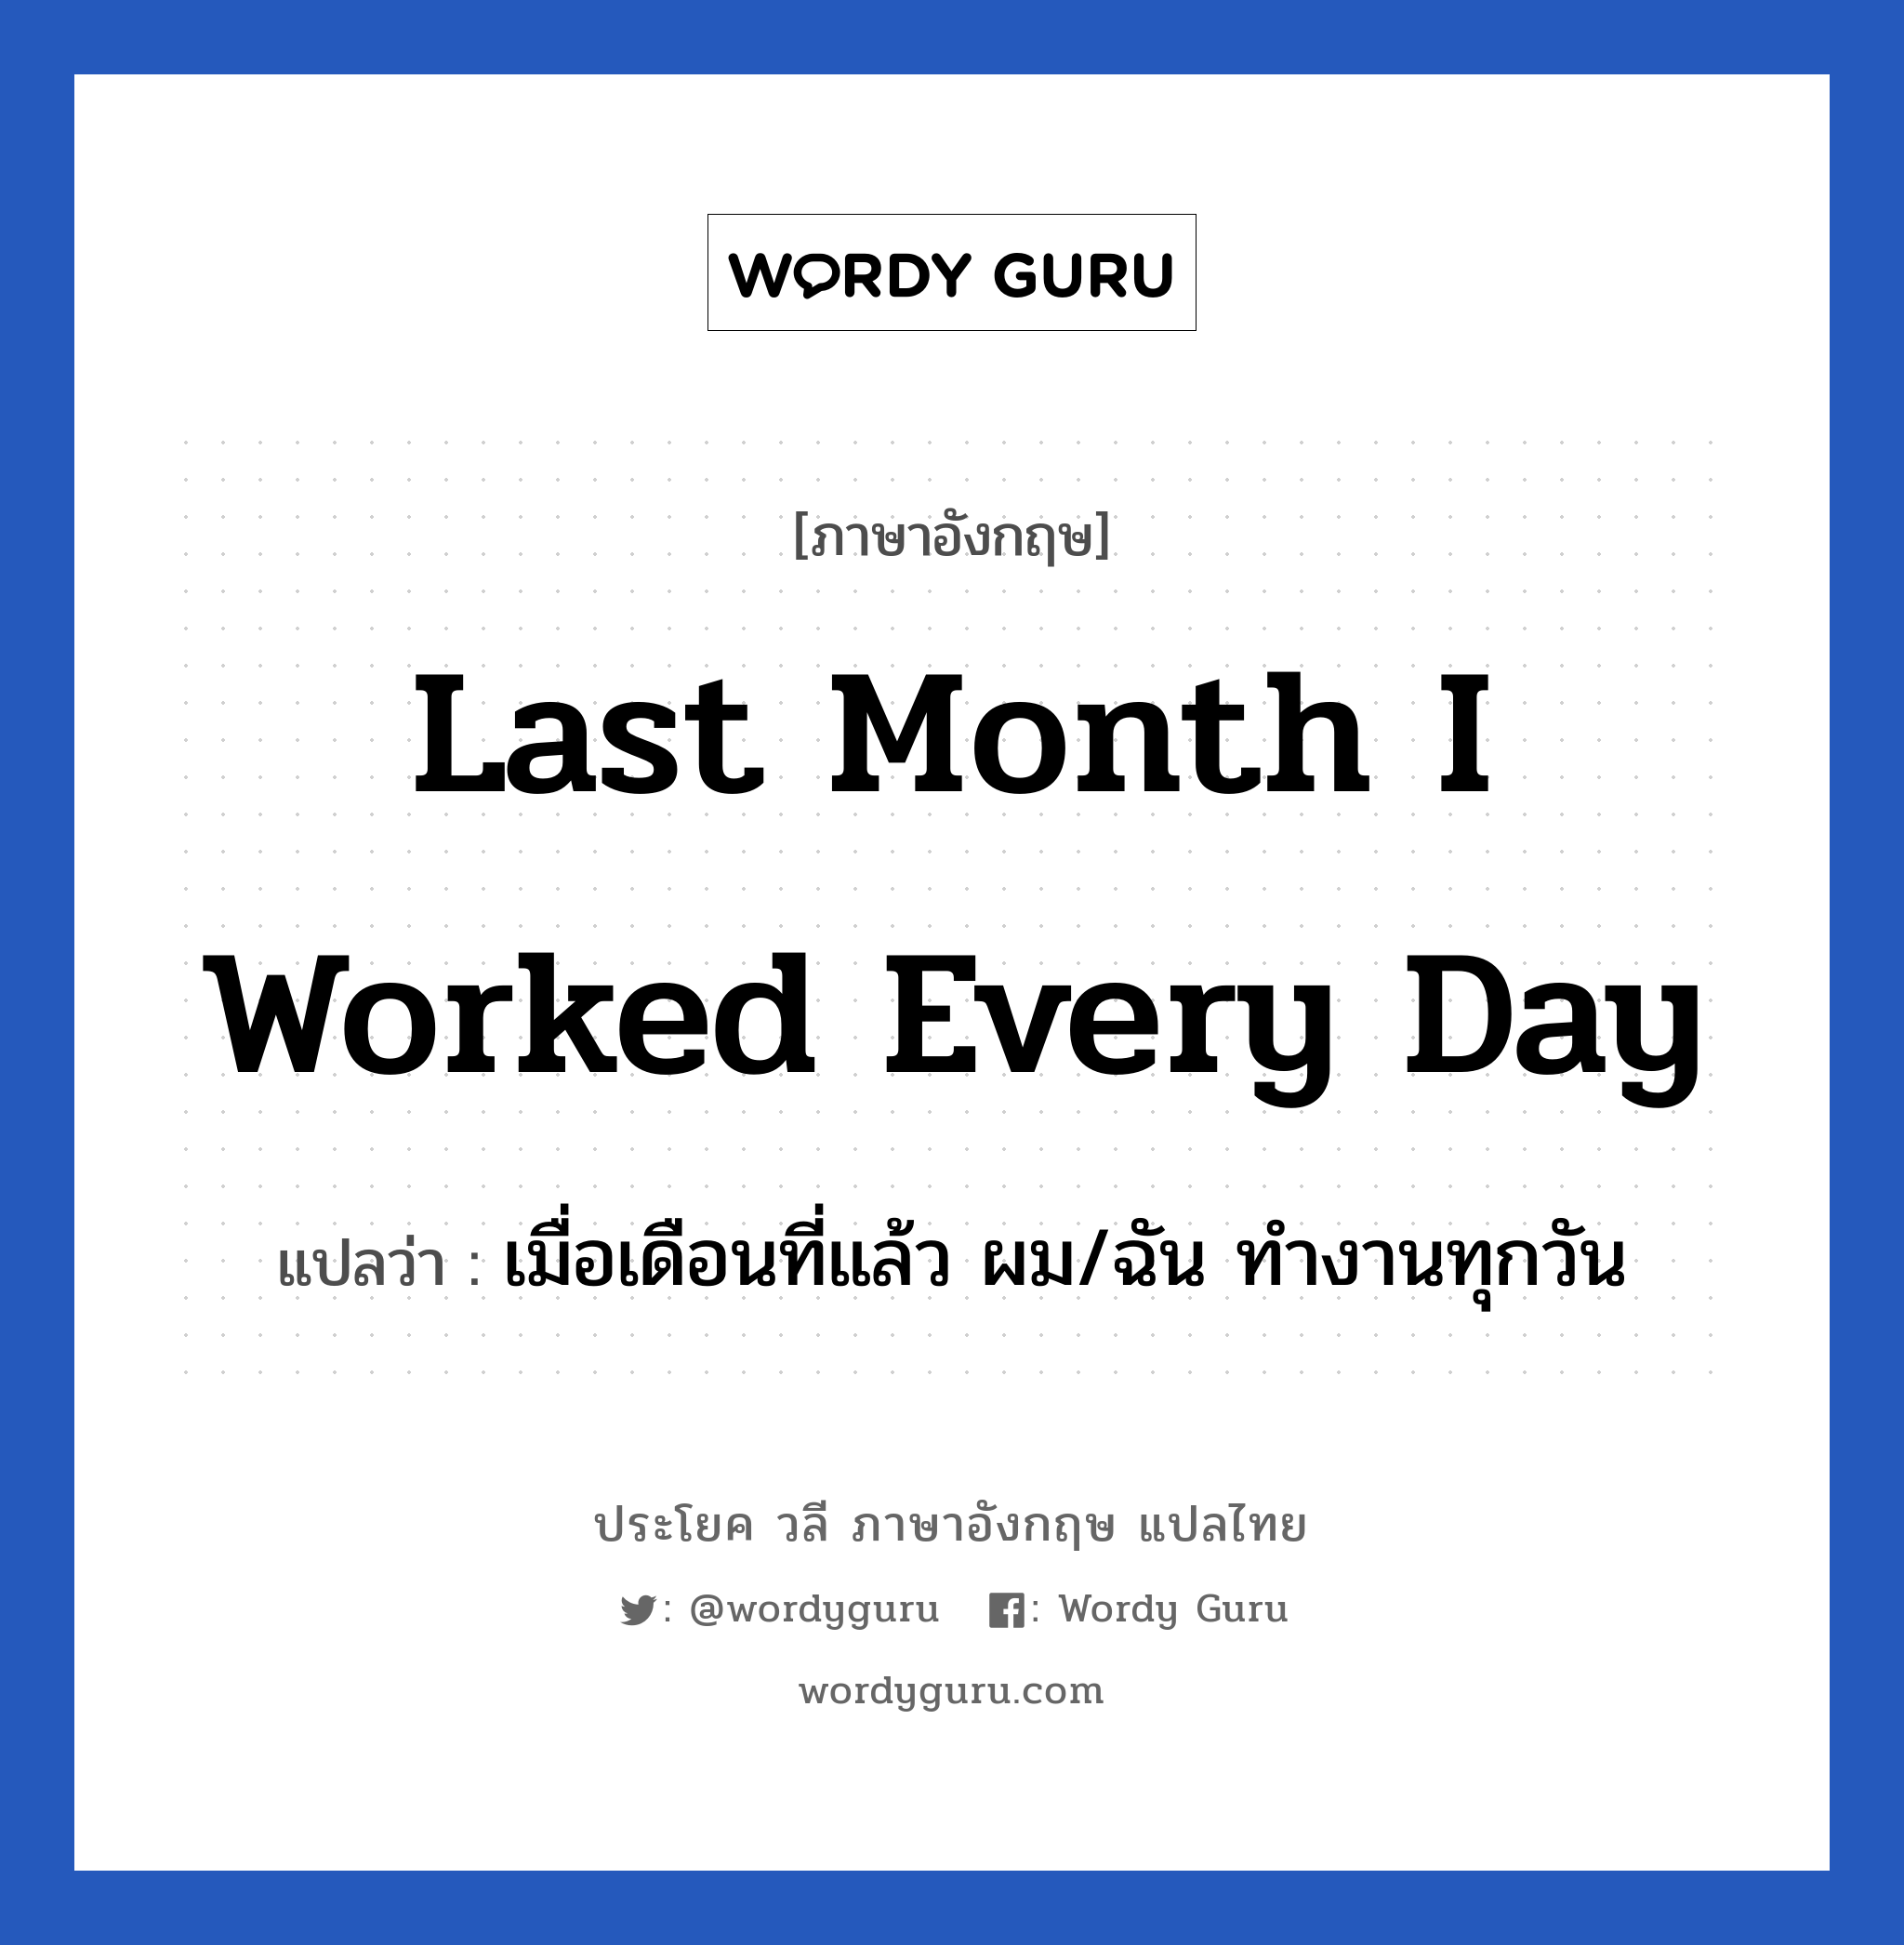 Last month I worked every day แปลว่า?, วลีภาษาอังกฤษ Last month I worked every day แปลว่า เมื่อเดือนที่แล้ว ผม/ฉัน ทำงานทุกวัน